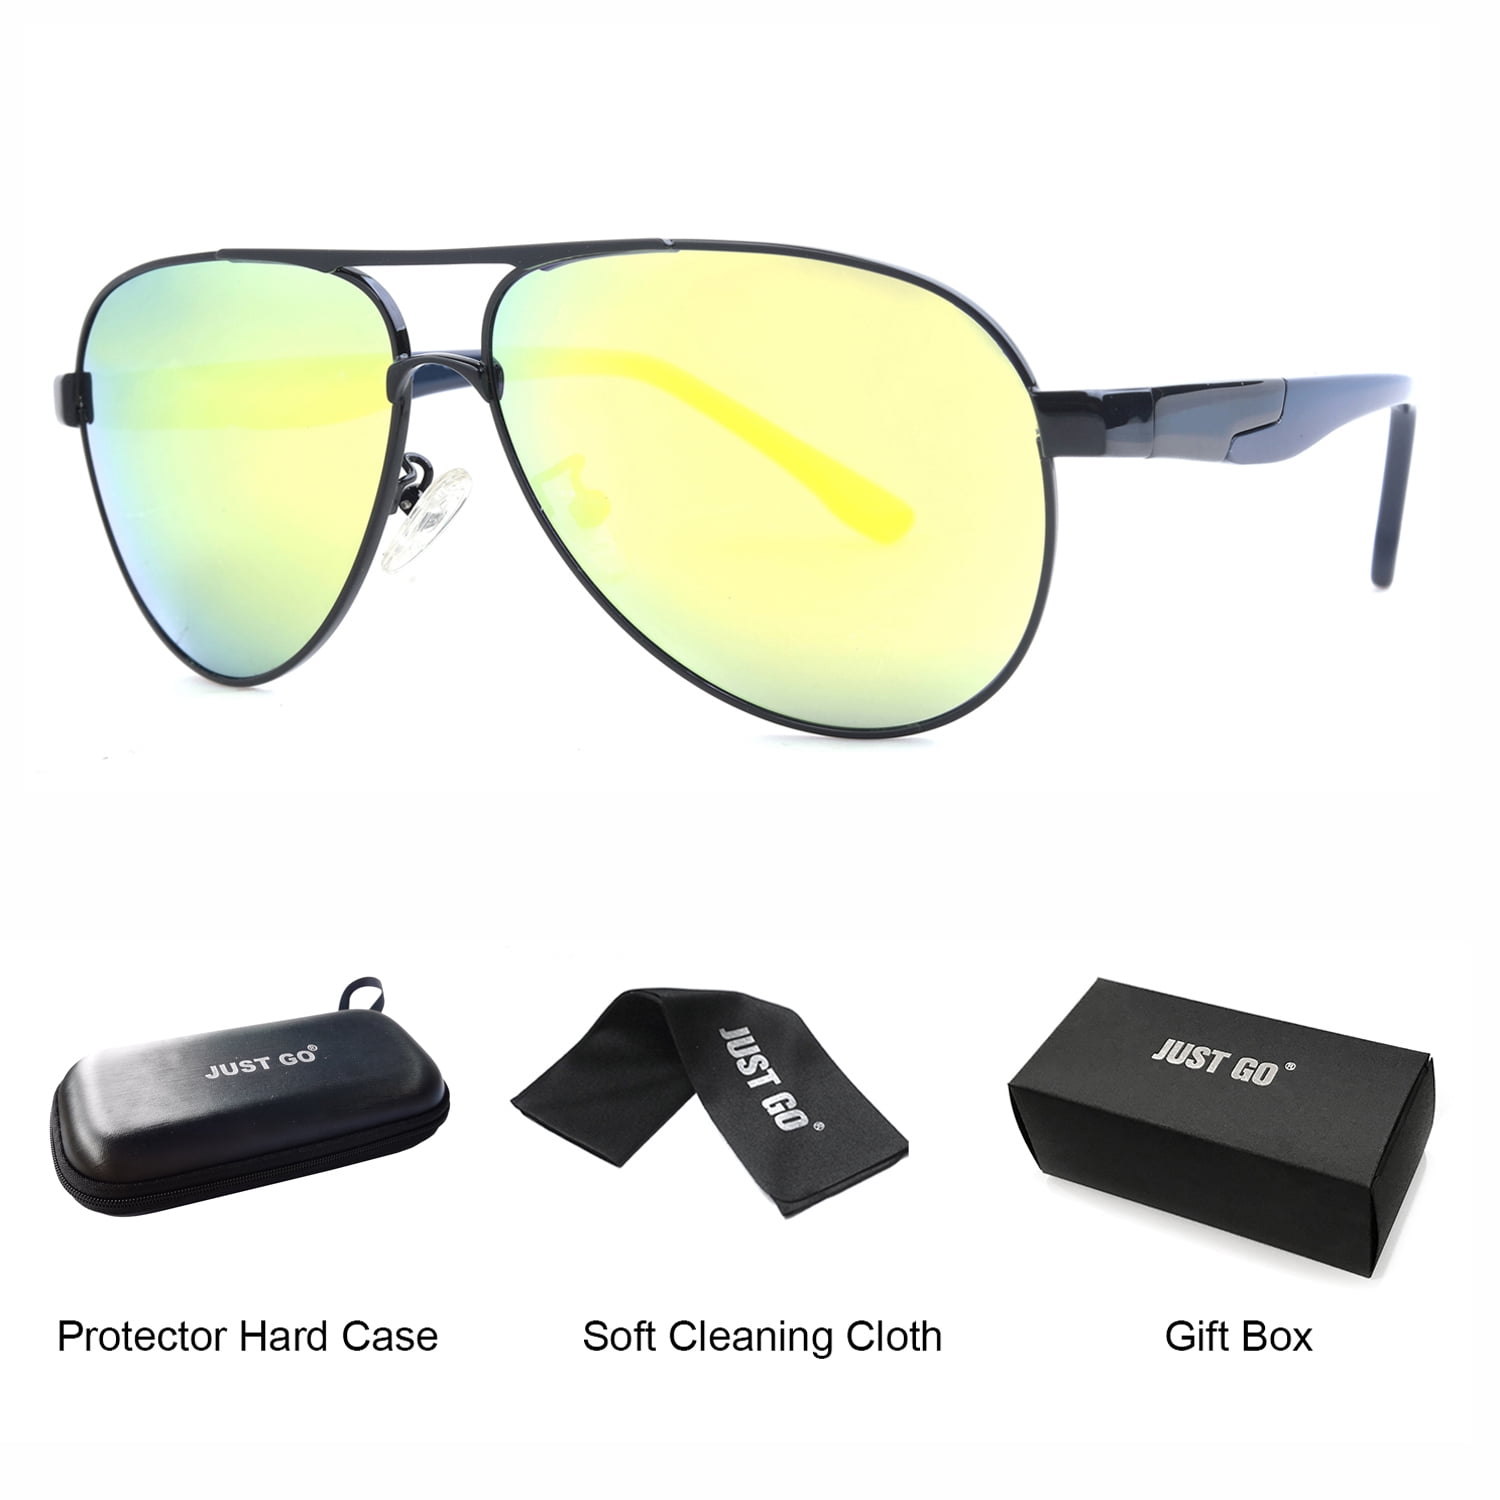 new polarized spring hinge sunglasses driving aviator best style for men & women 